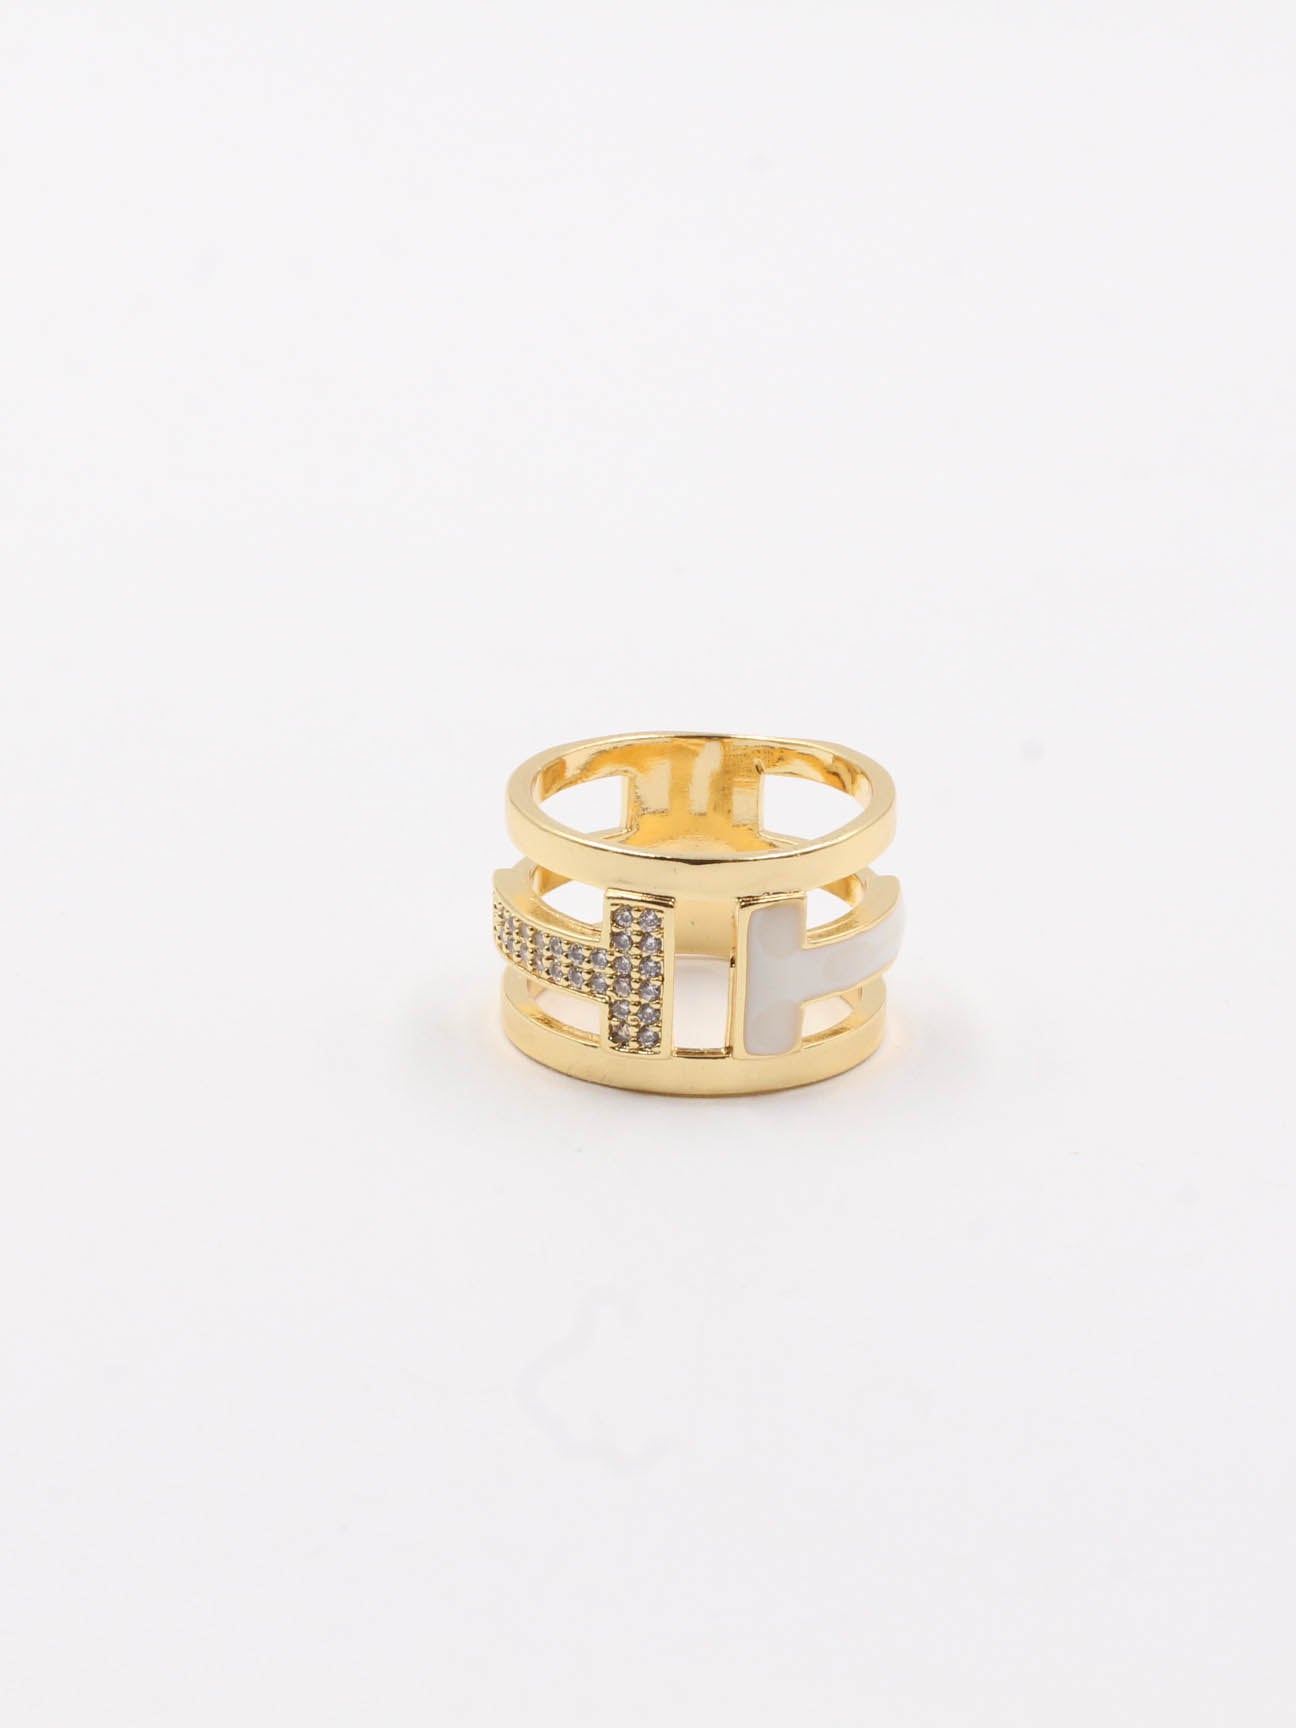 Tiffany colors ring - خاتم تيفاني ألوان خواتم Jewel ابيض ذهبي 8 